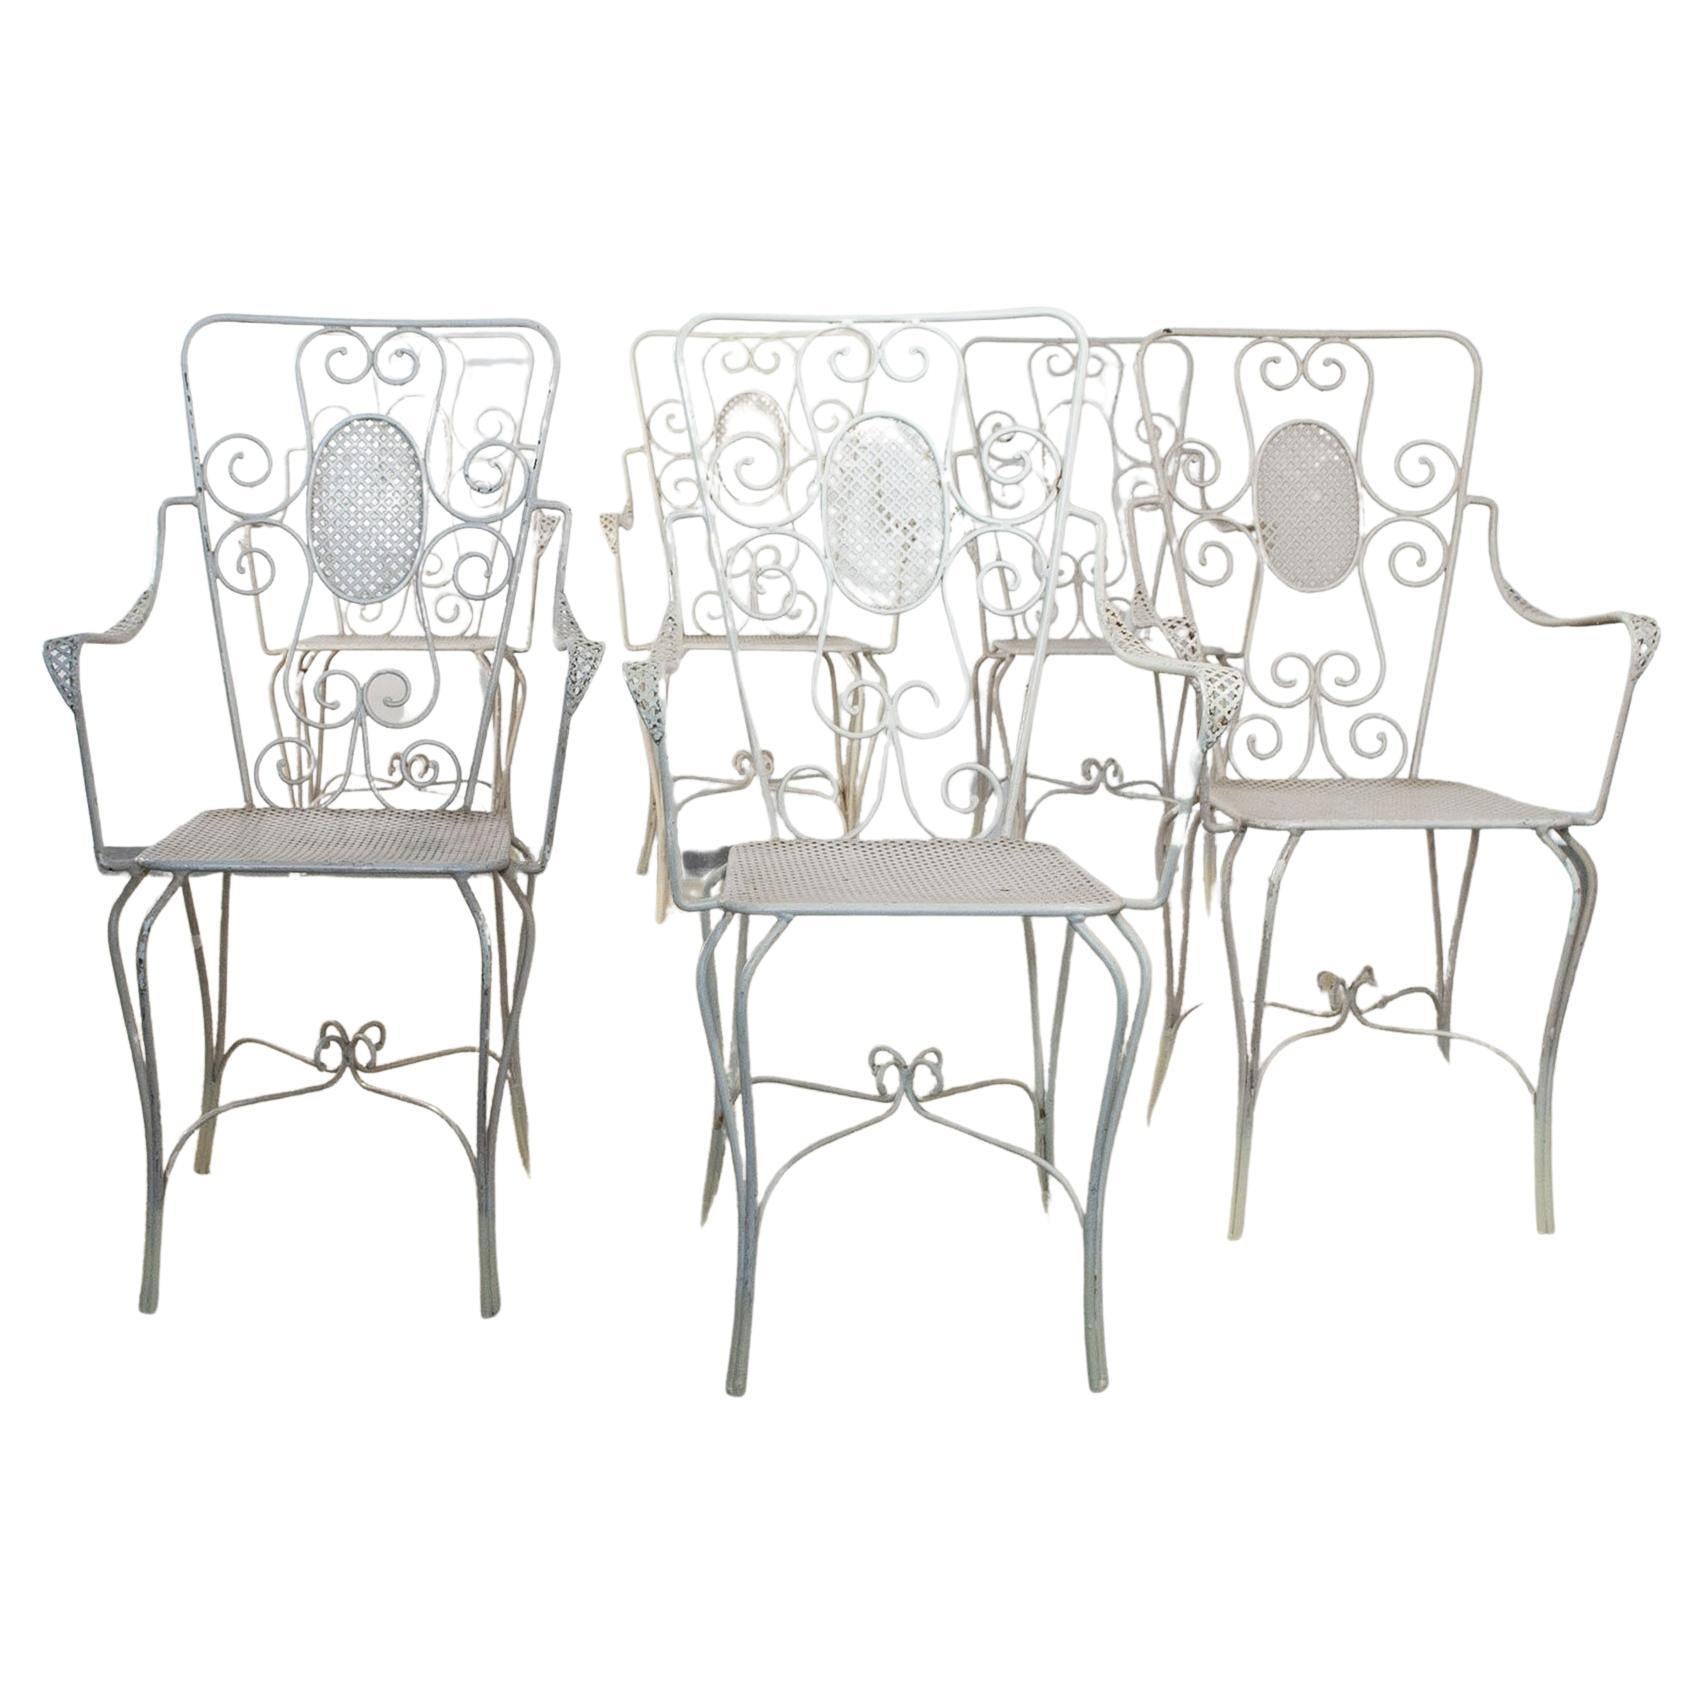 Casa E Giardino, Six White Painted Metal Chairs, 1942